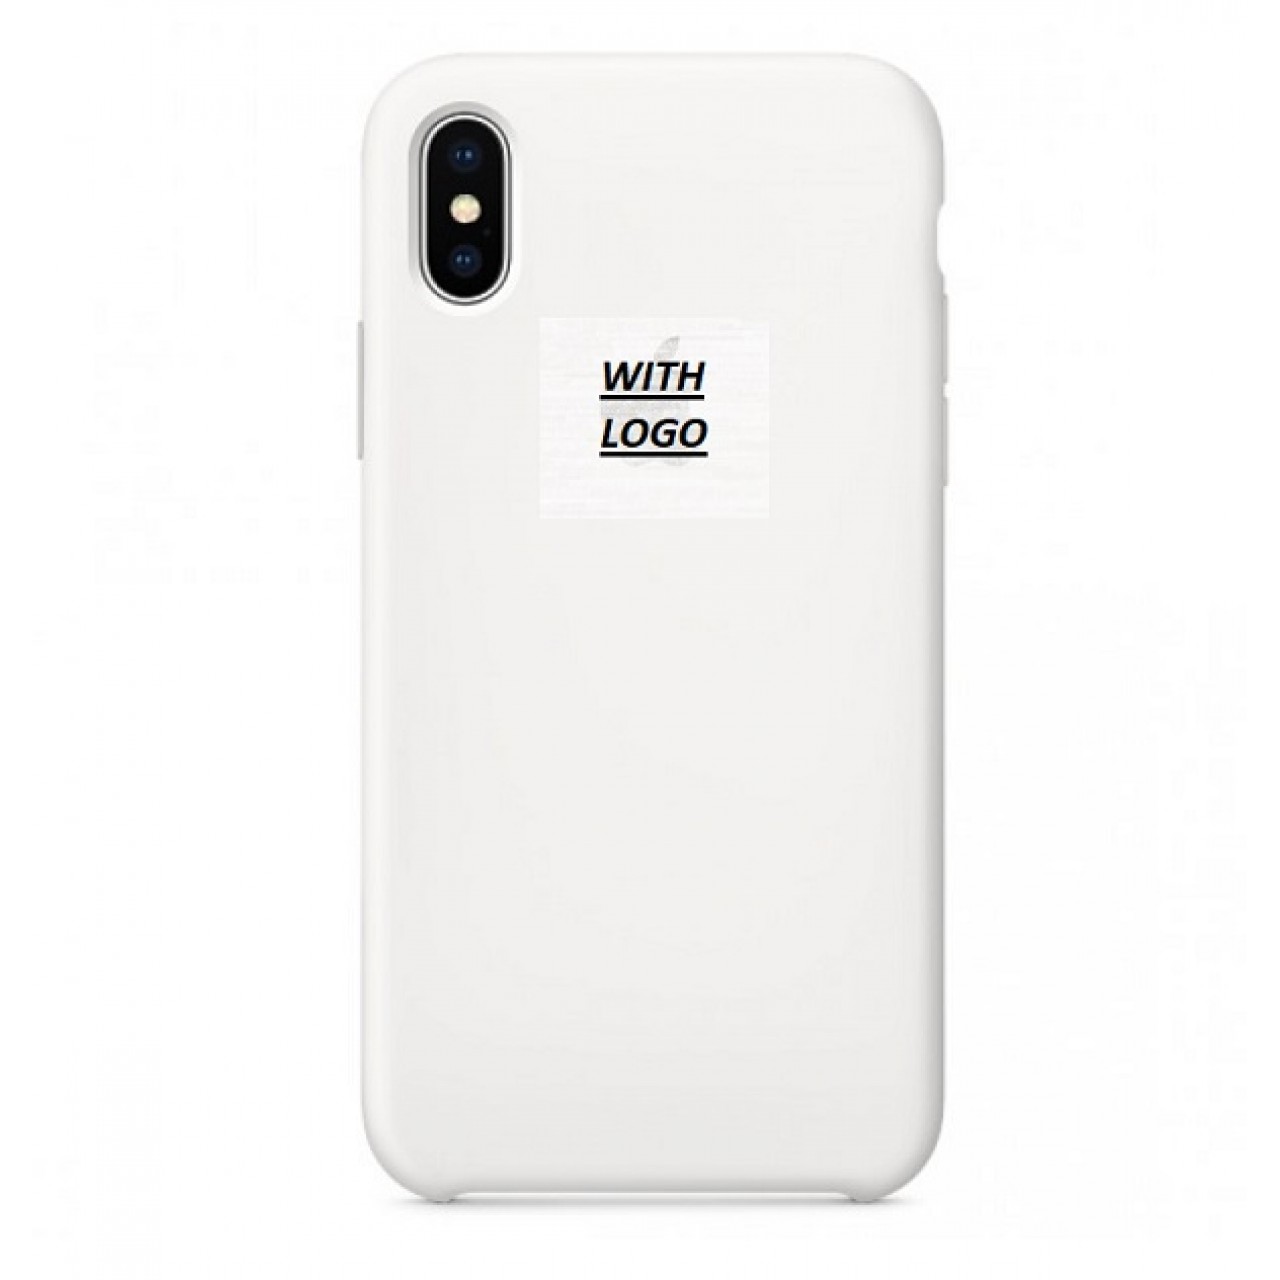 Θήκη Προστασίας Σιλικόνης iPhone XS Max - Back Cover Silicone Case - White